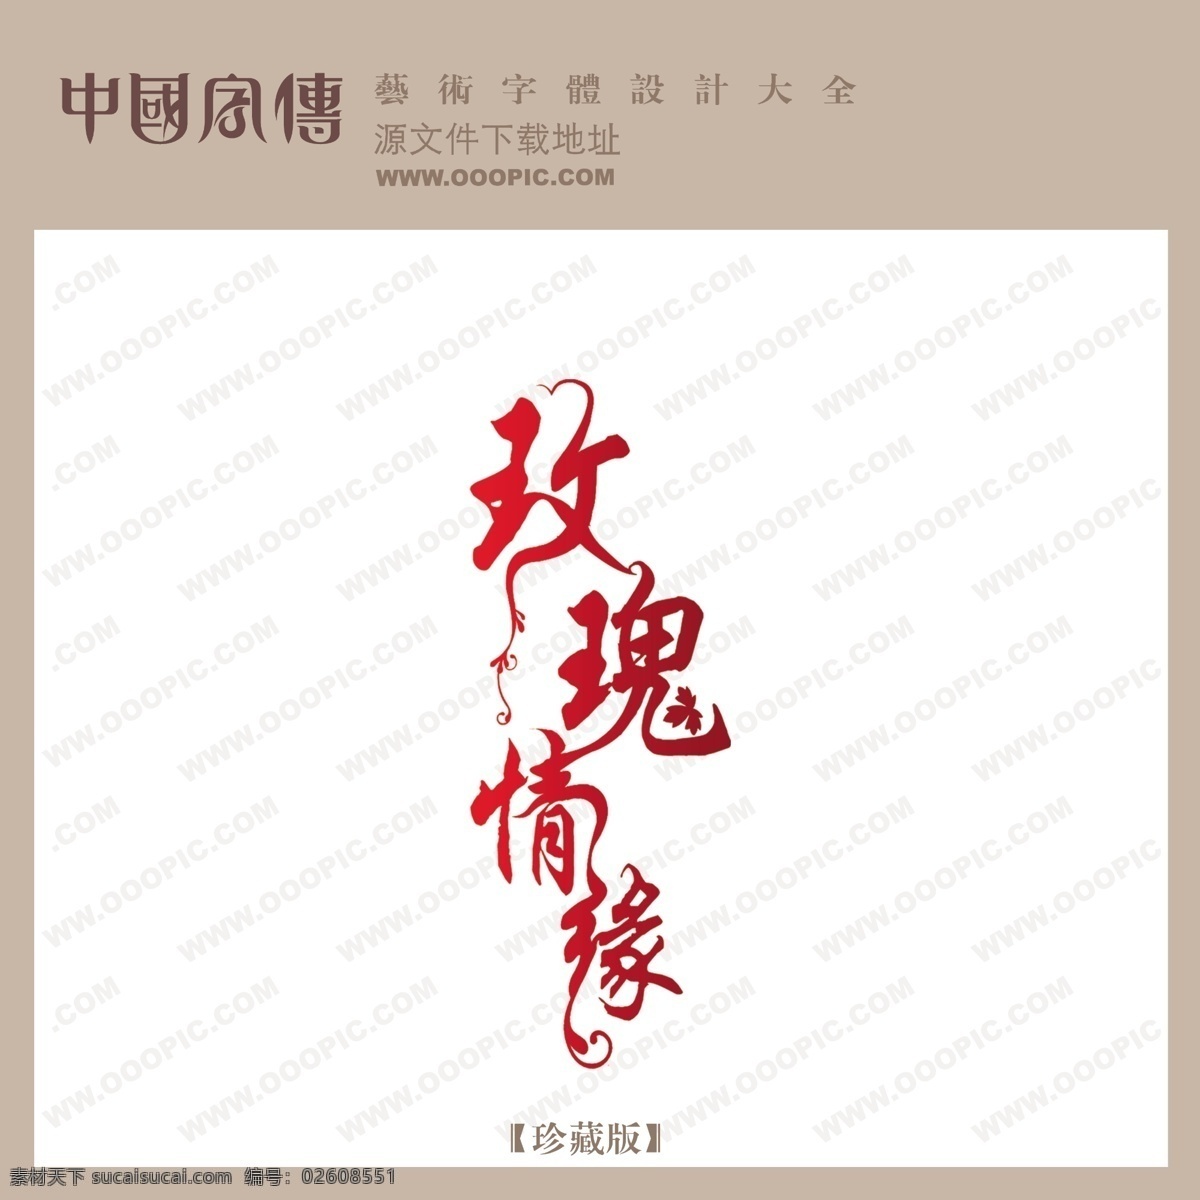 玫瑰情缘 中文 现代艺术 字 创意 艺术 创意艺术字 婚纱艺术字 写真艺术字 psd源文件